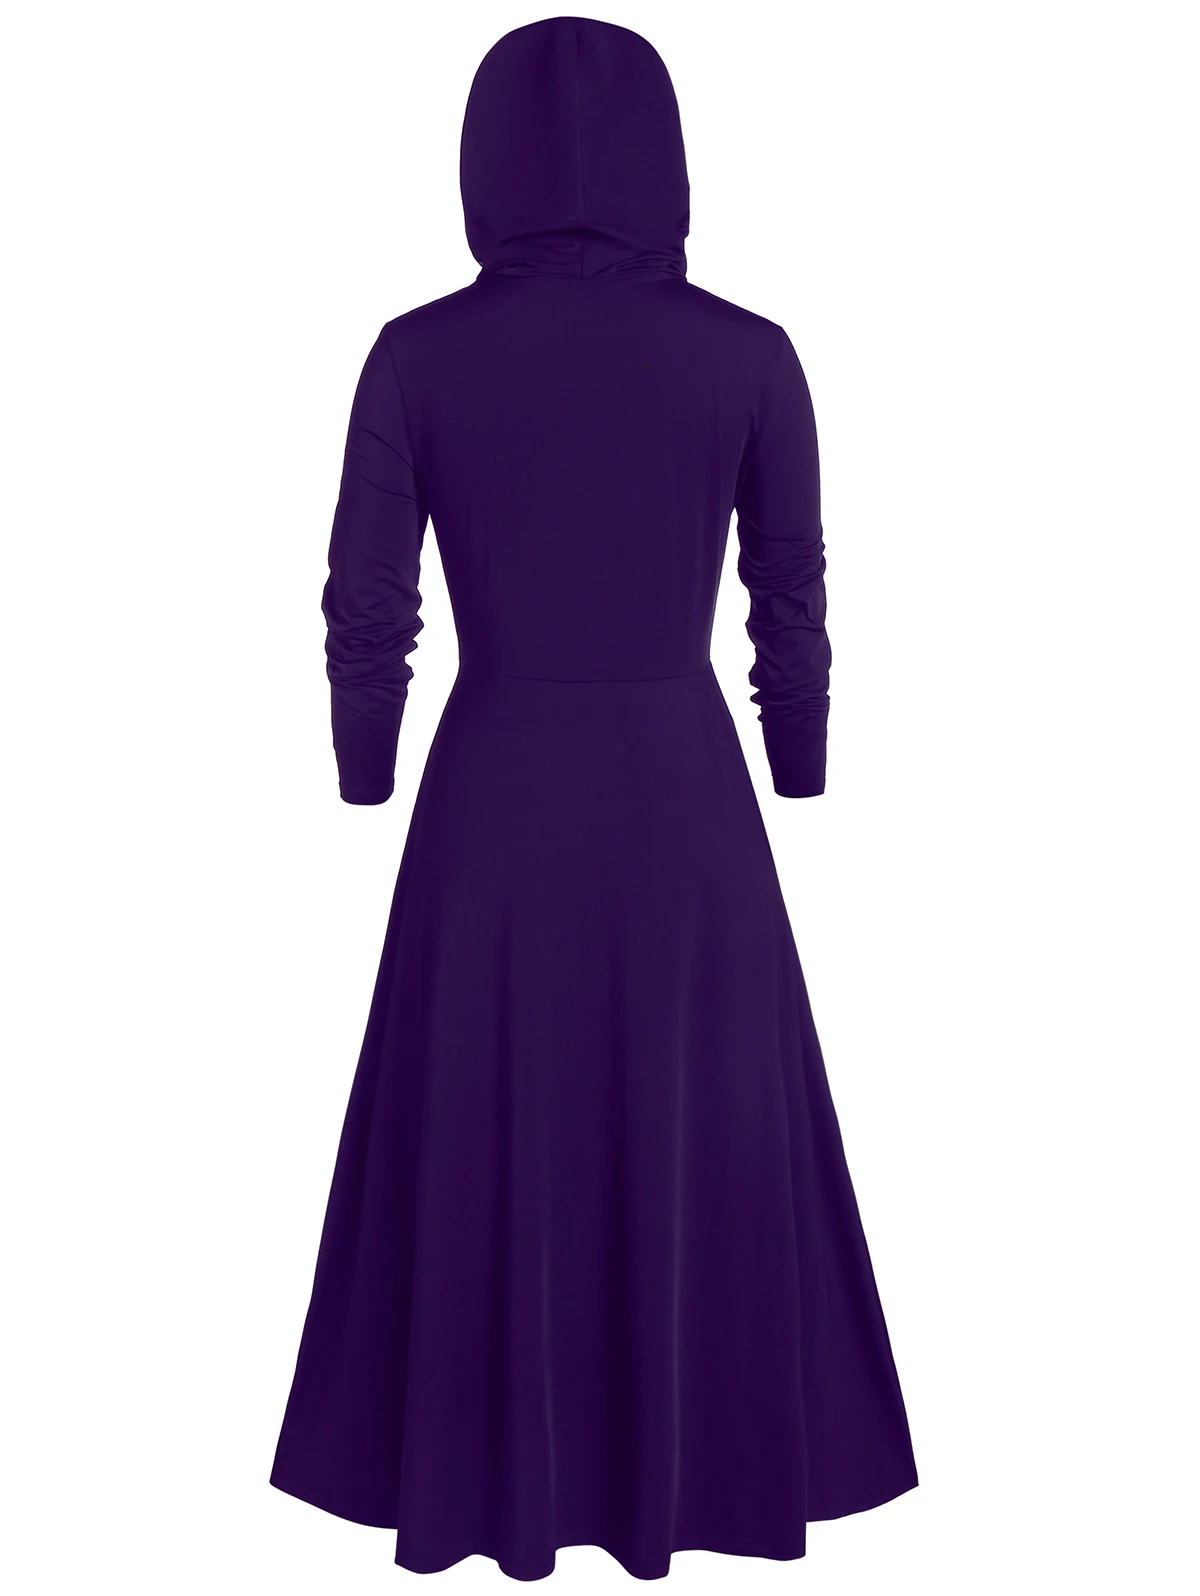 ROSEGAL размера плюс для активного образа жизни, с капюшоном, высокое одноцветные с низкими голенищами блузка Для женщин, с высокой талией, а-силуэт, свитер с длинными рукавами в готическом стиле Вечерние Хэллоуин верхняя одежда